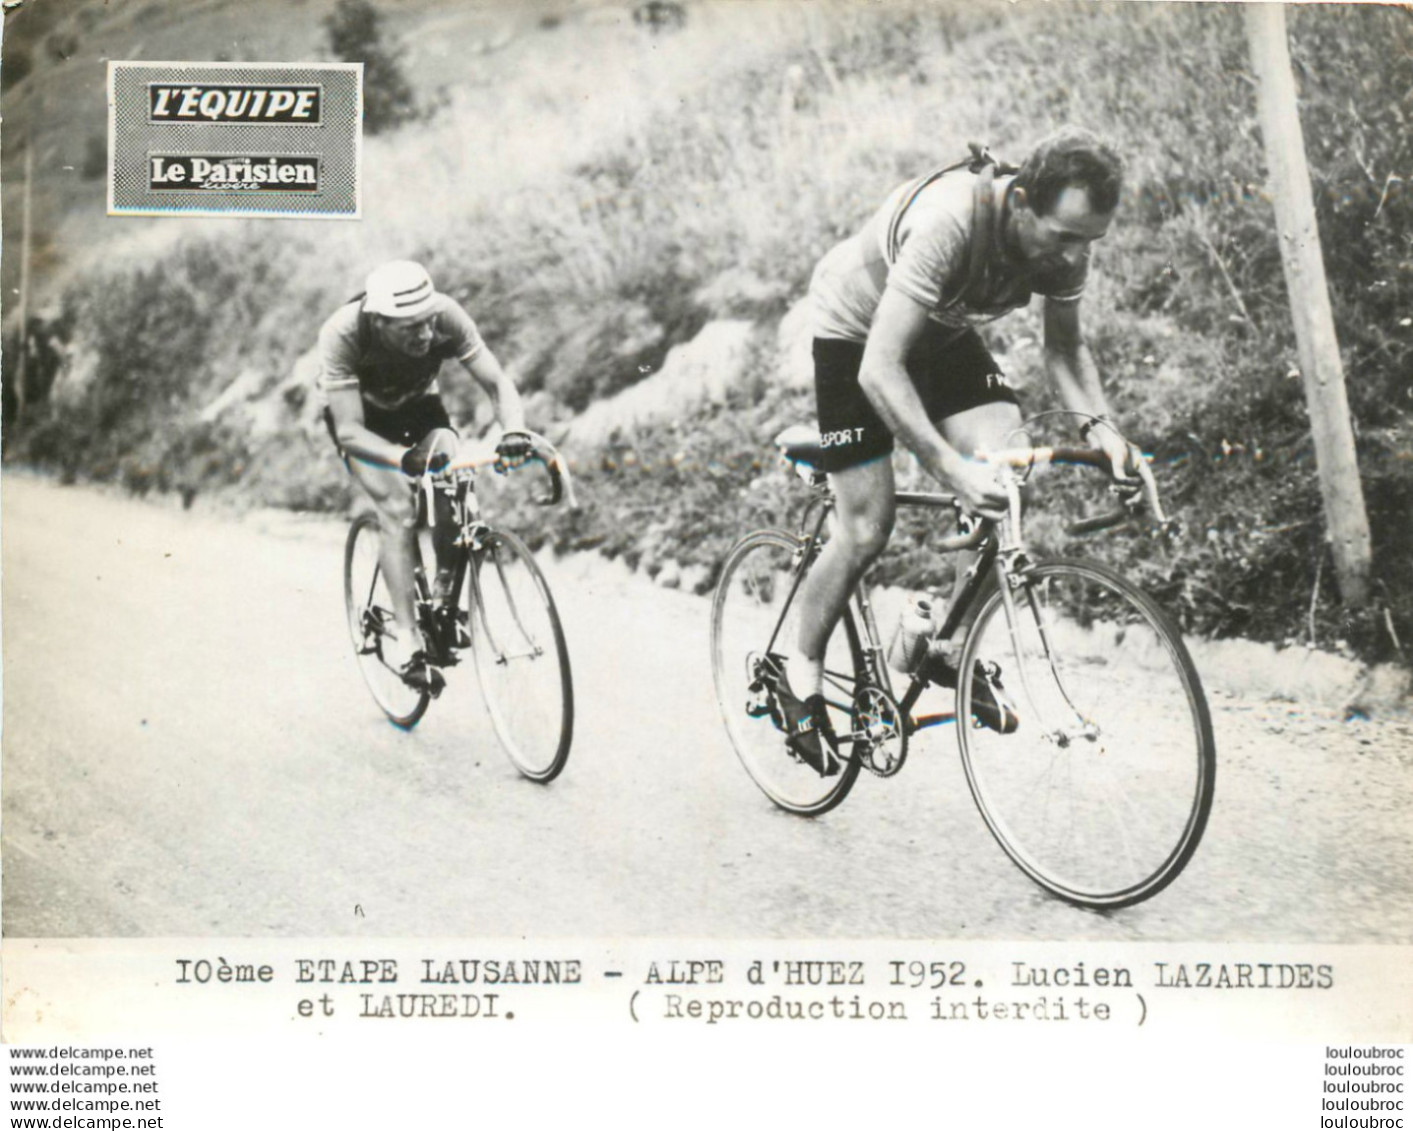 TOUR DE FRANCE 1952 LAZARIDES - LAUREDI  10ème ETAPE PHOTO DE PRESSE ORIGINALE ARGENTIQUE  20X15CM EQUIPE  LE PARISIEN - Sporten